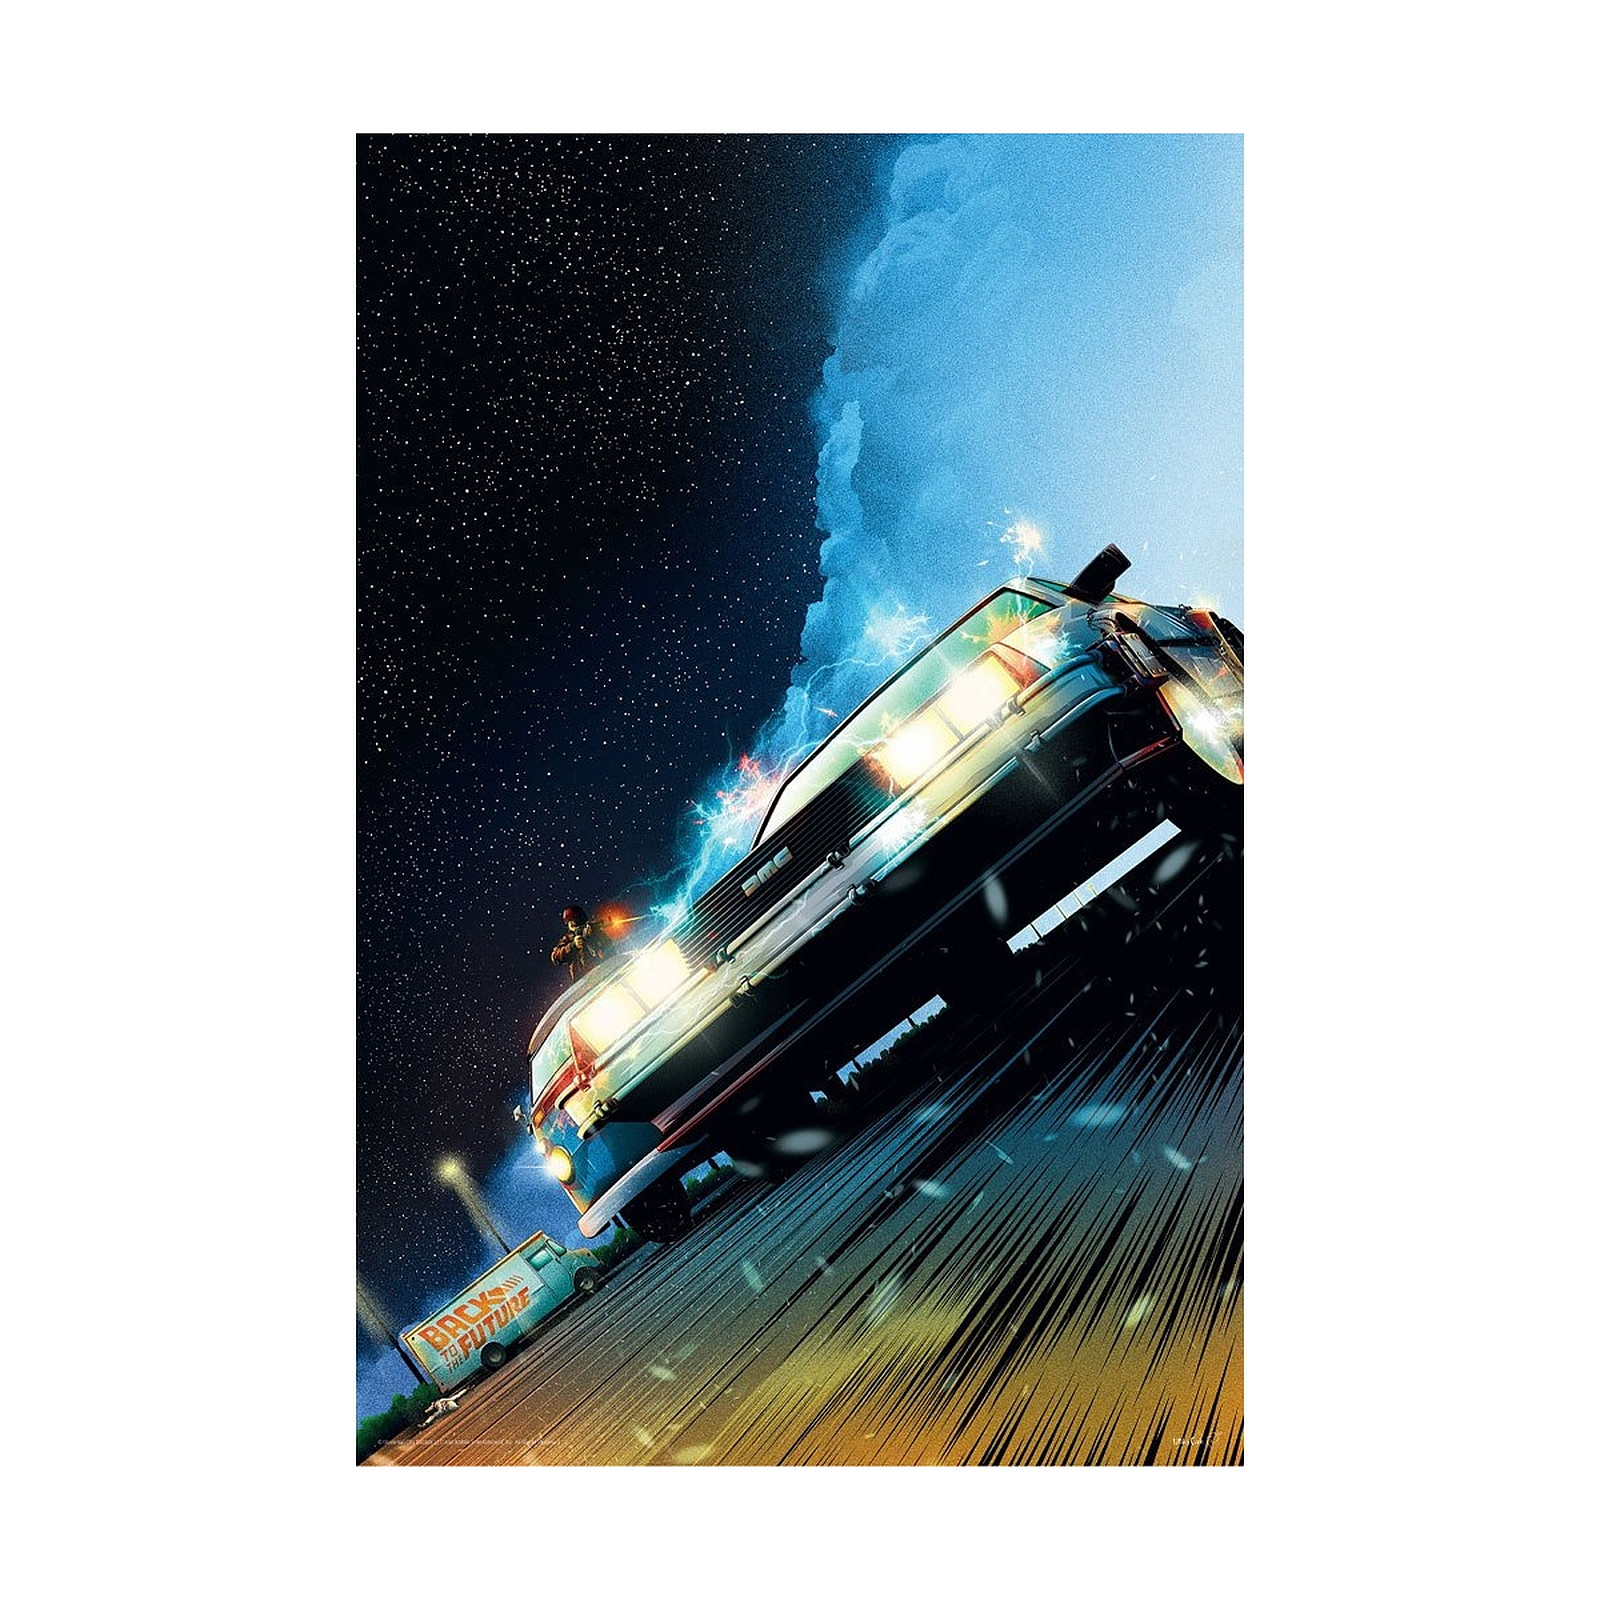 Retour vers le futur - Lithographie DeLorean Limited Edition 42 x 30 cm - Posters Fanattik